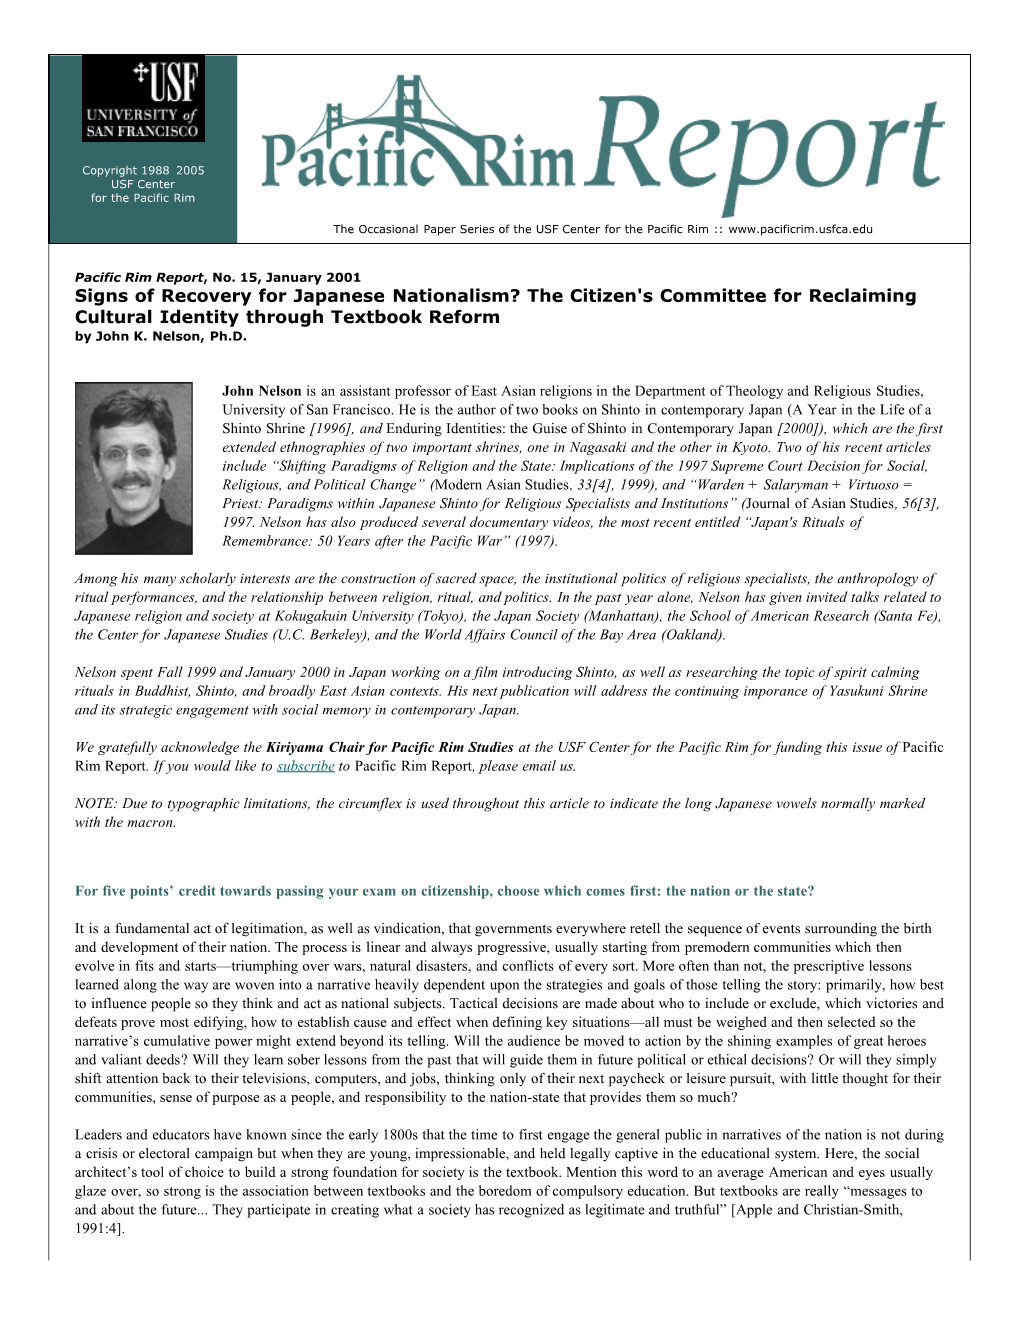 Pacific Rim Report No.15